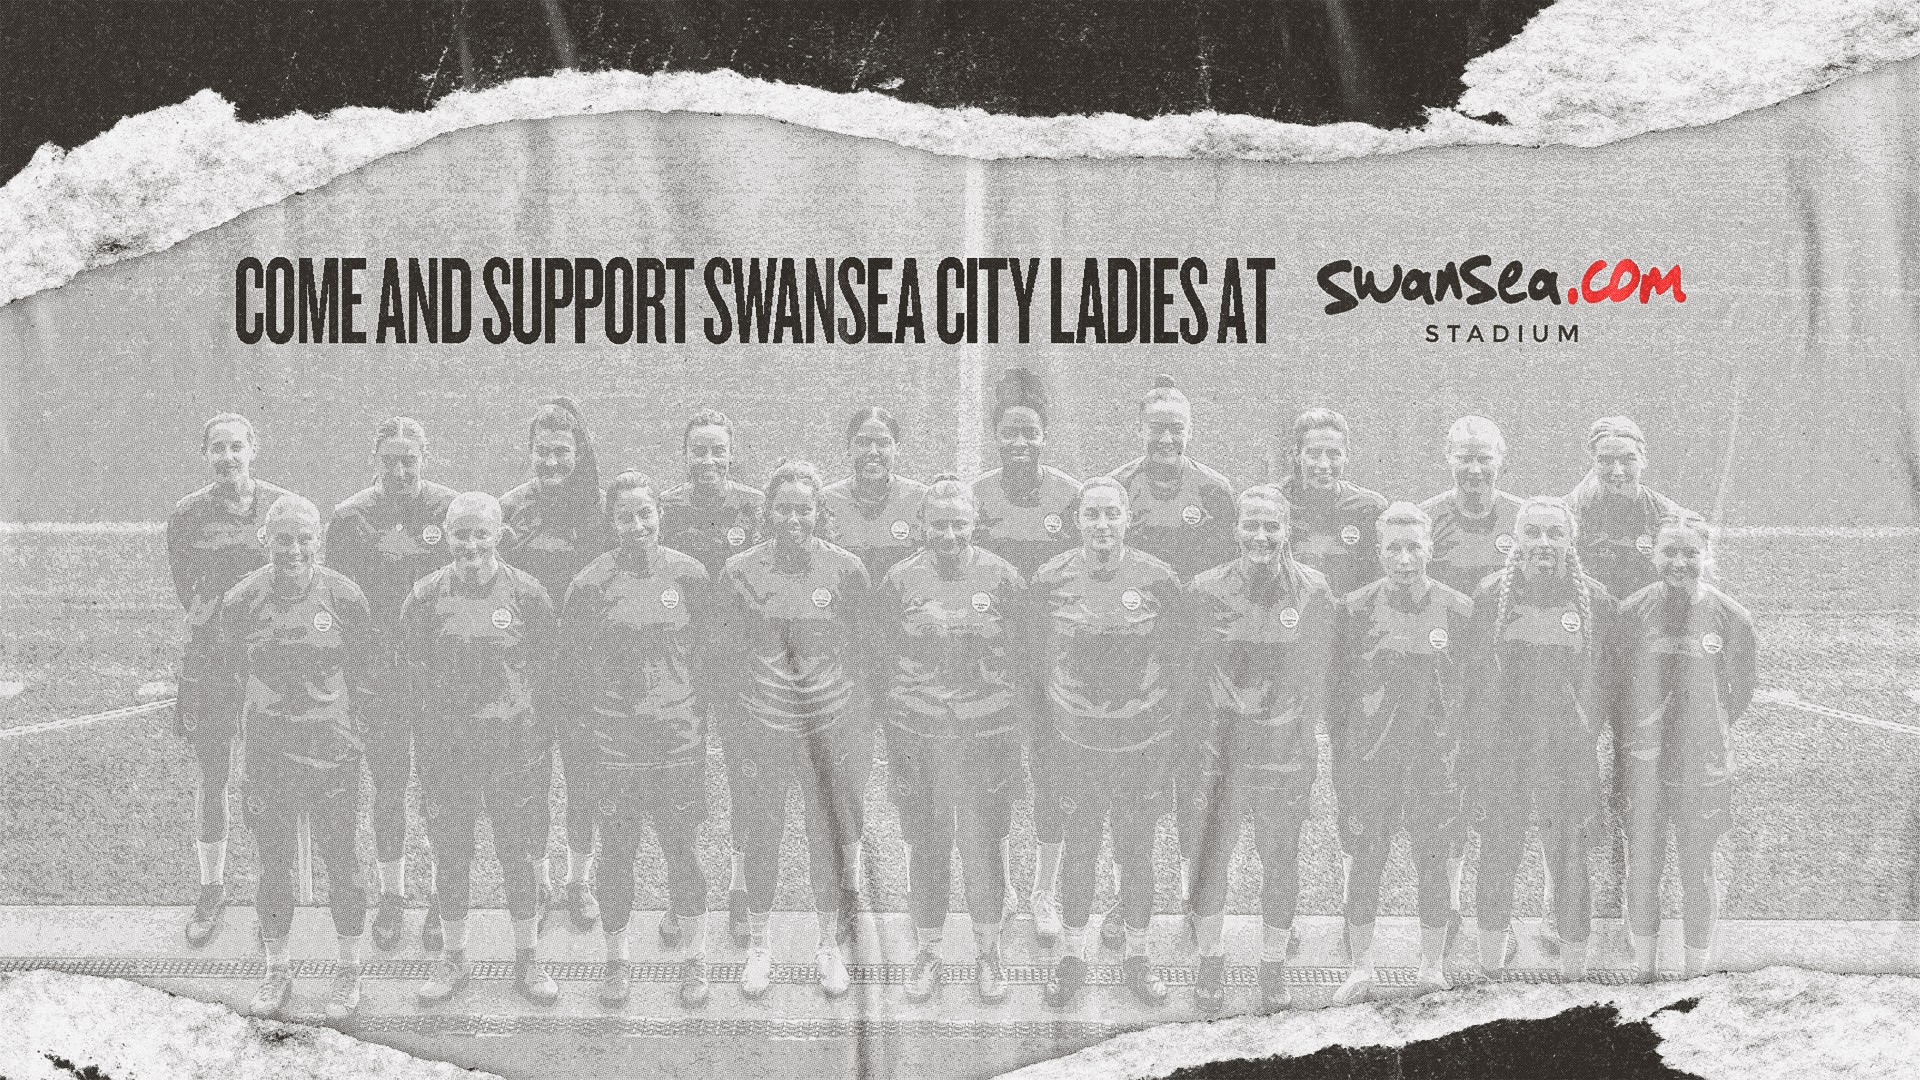 Swansea City Ladies tickets